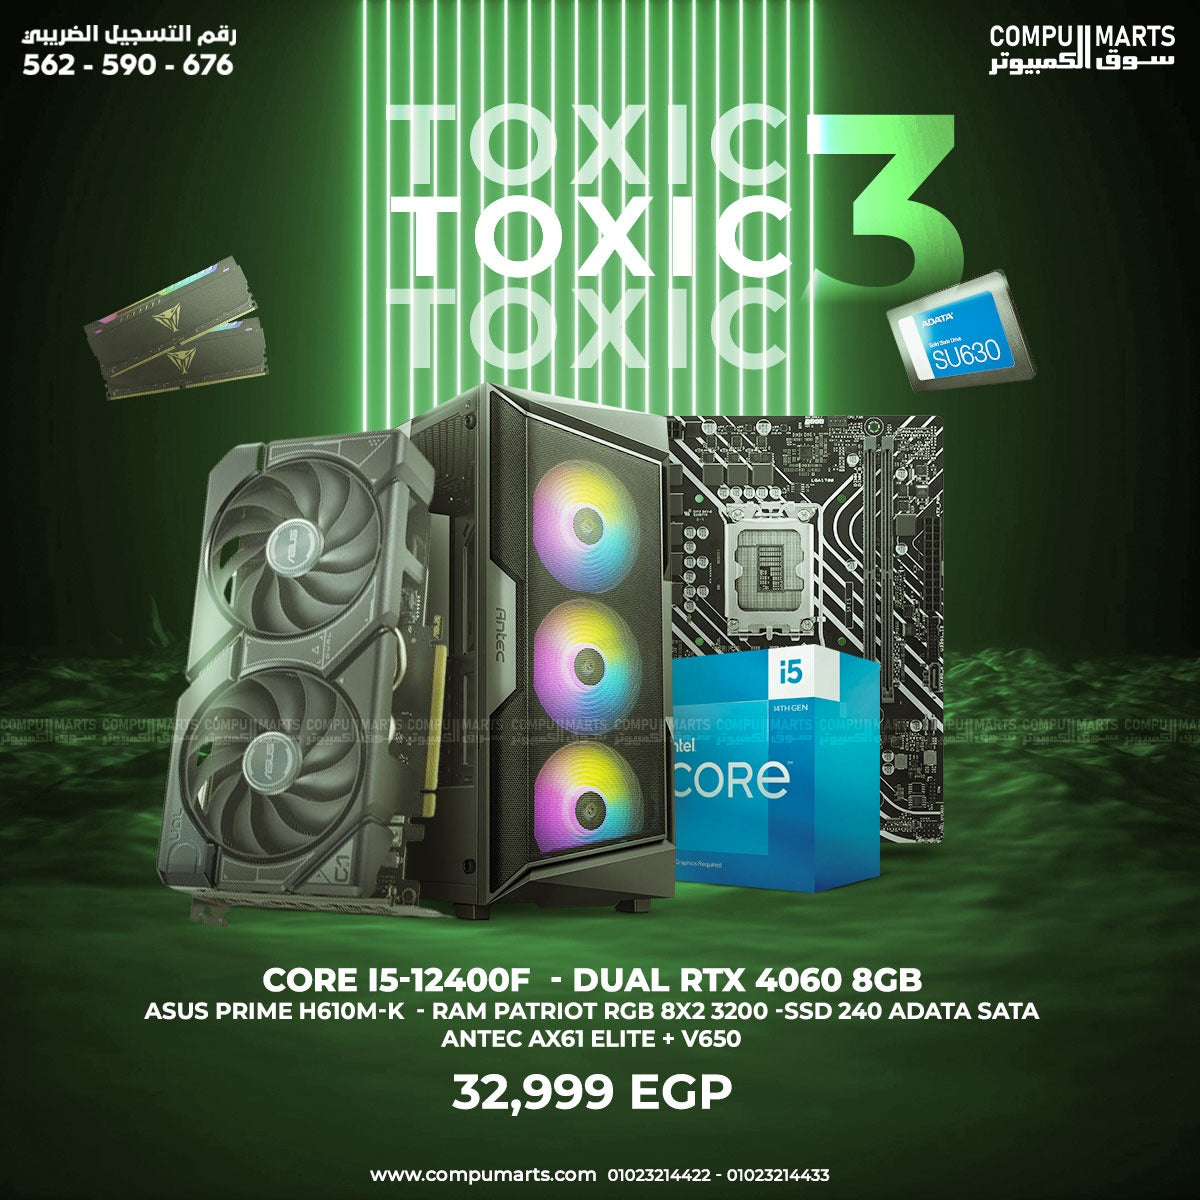 TOXIC 3 Intel Core i5-12400F - RAM PATRIOT RGB 8X2 - SSD 240GB - ASUS Dual RTX 4060 8GB OC